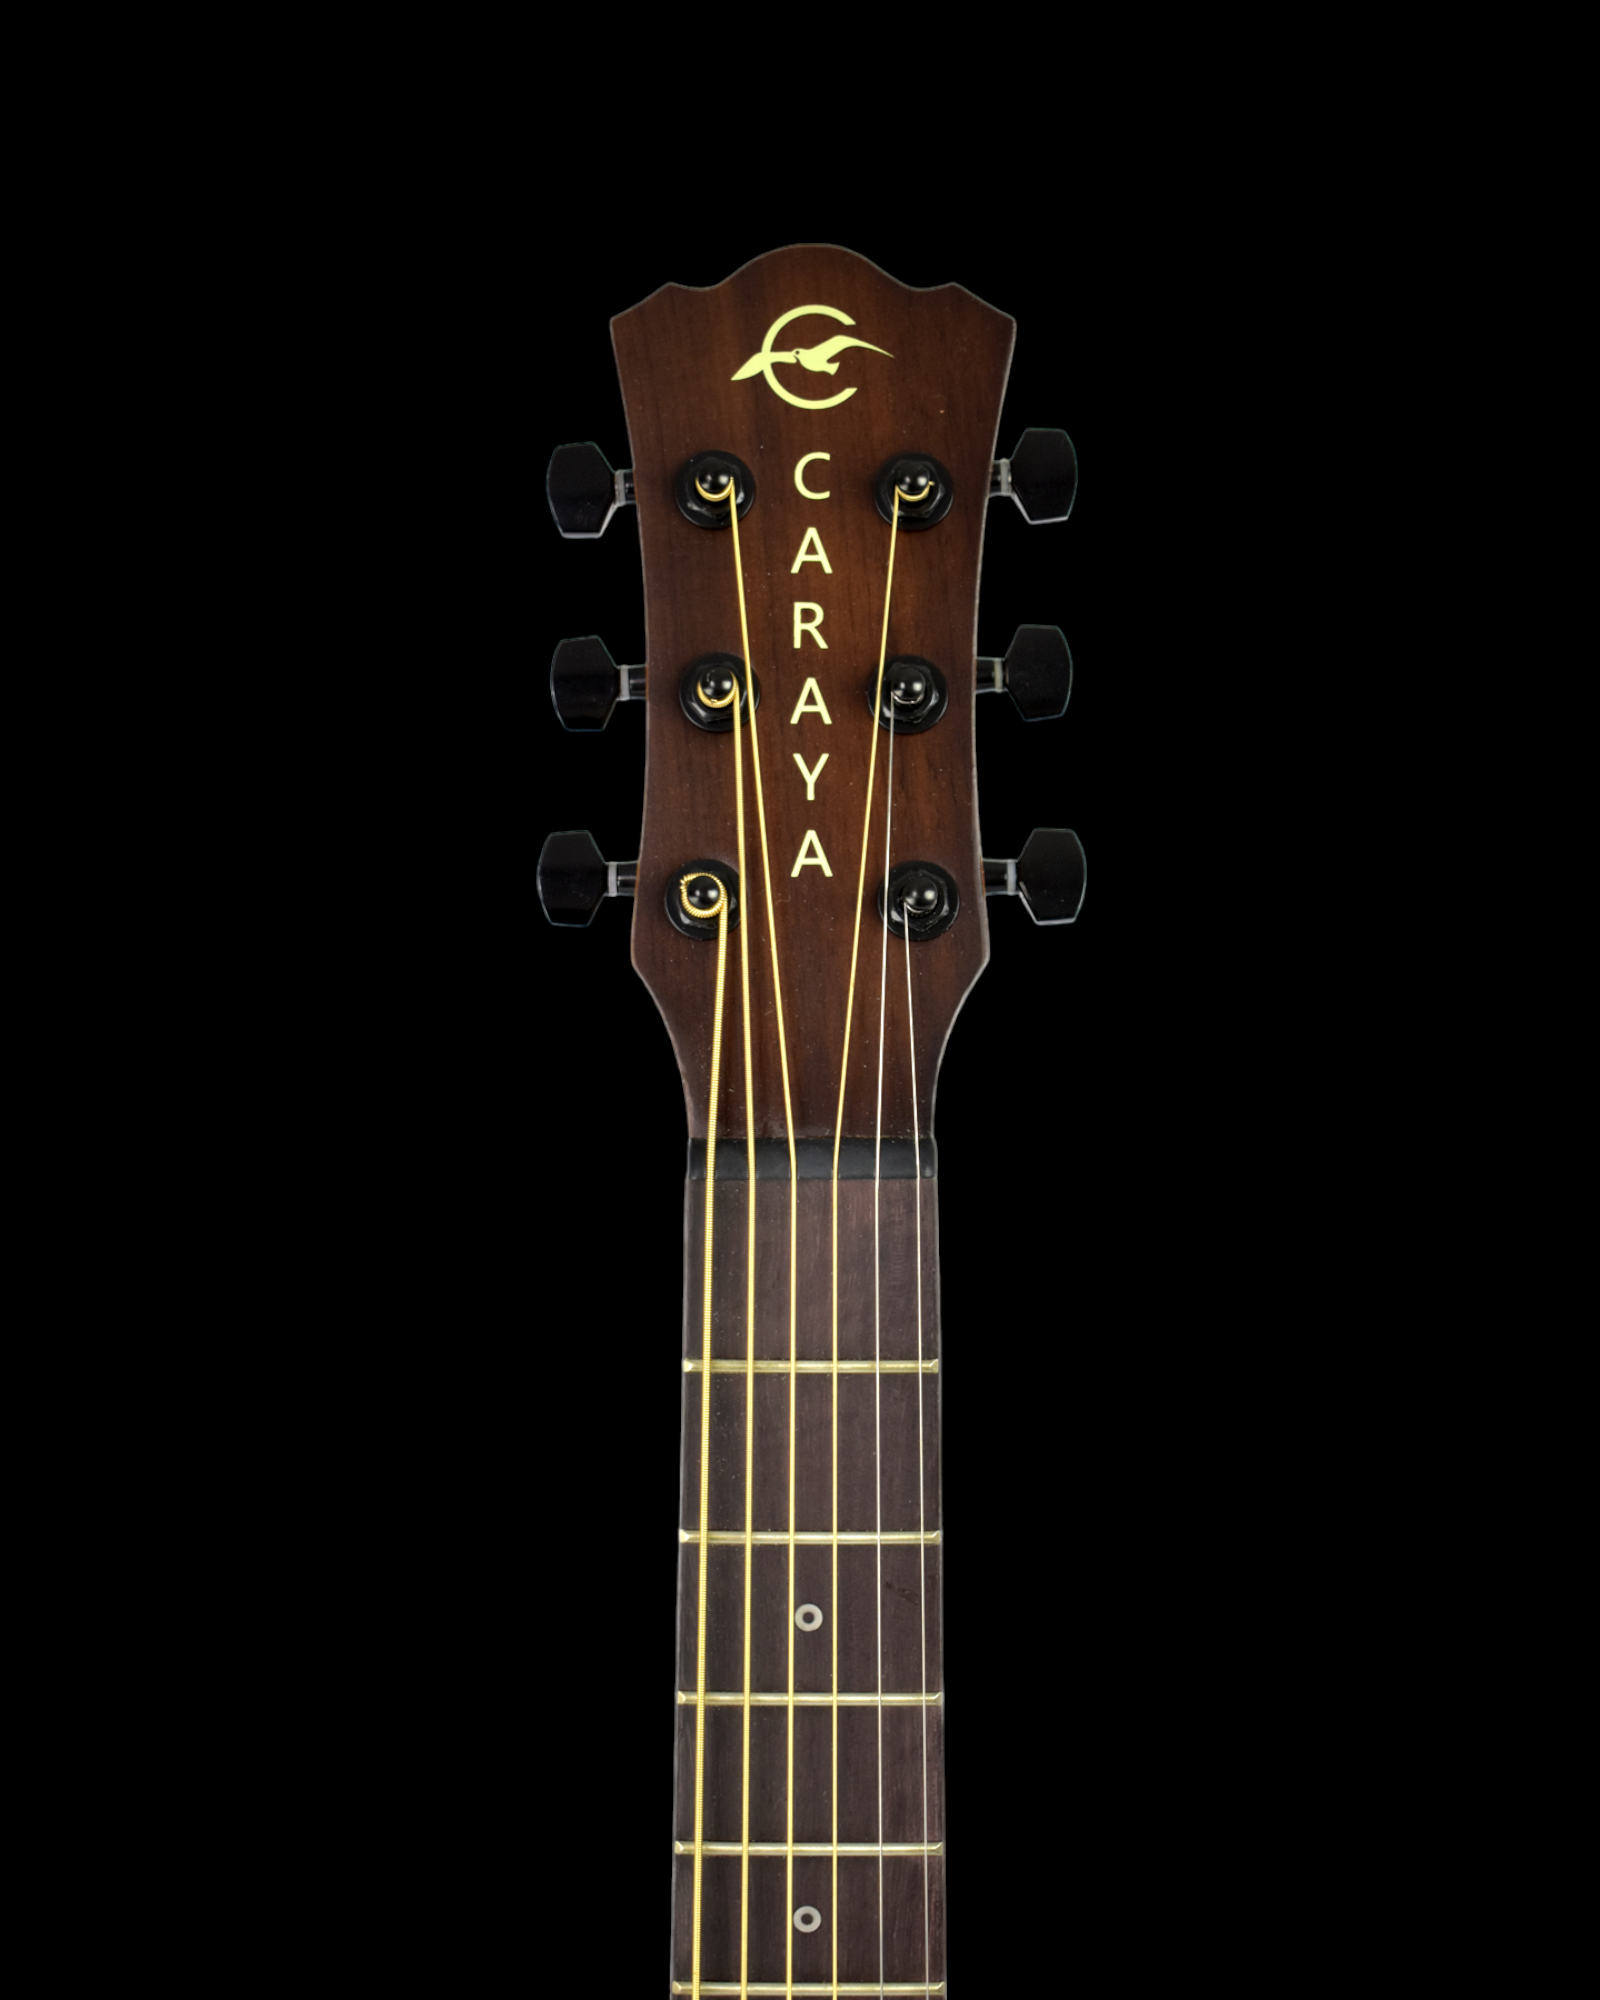 Caraya 36 Traveler Built-In Pickups/Tuner Acoustic Guitar